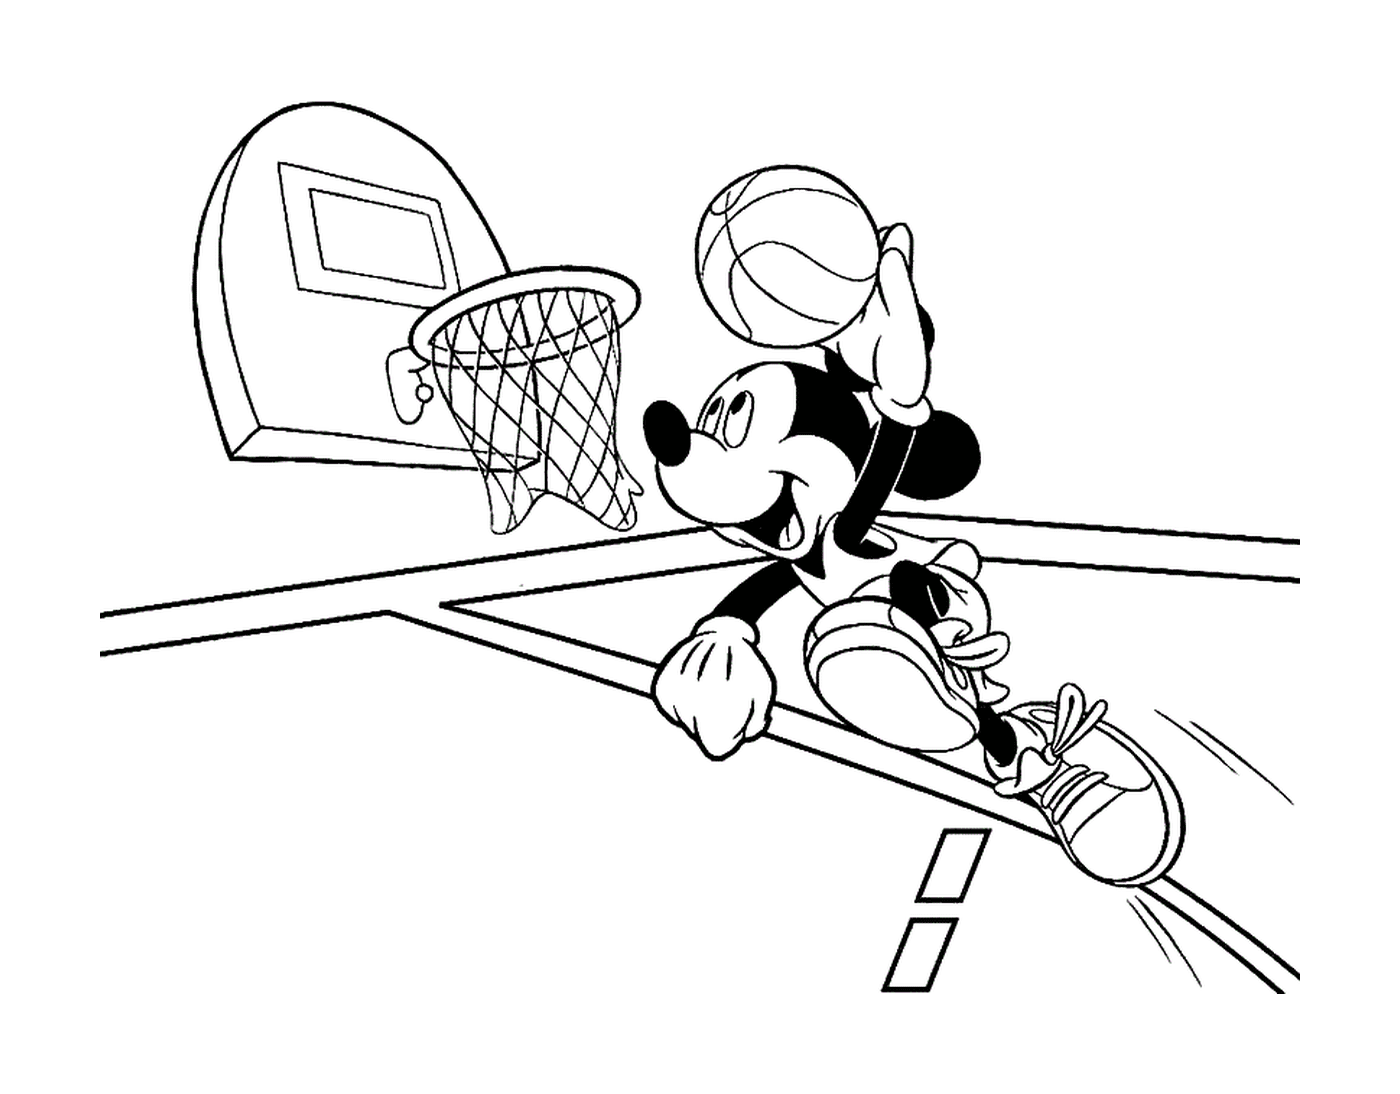  米奇和男孩打篮球 